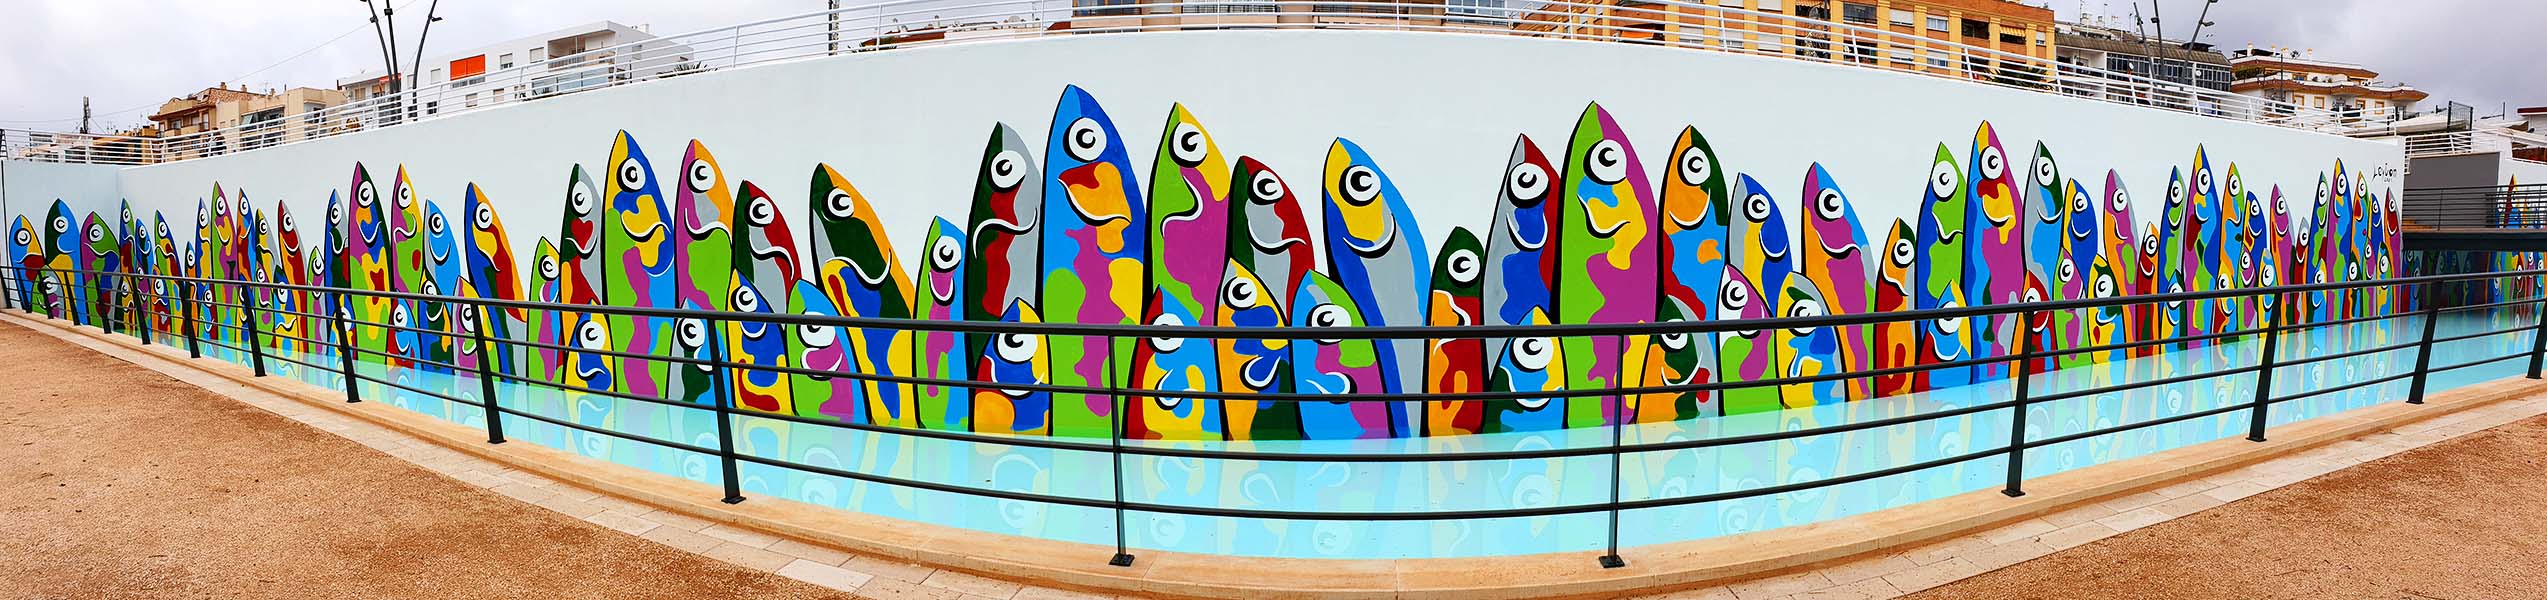 Curro Leyton finaliza el mural ‘La Sardiná’ situado en Bulevar San Pedro Alcántara